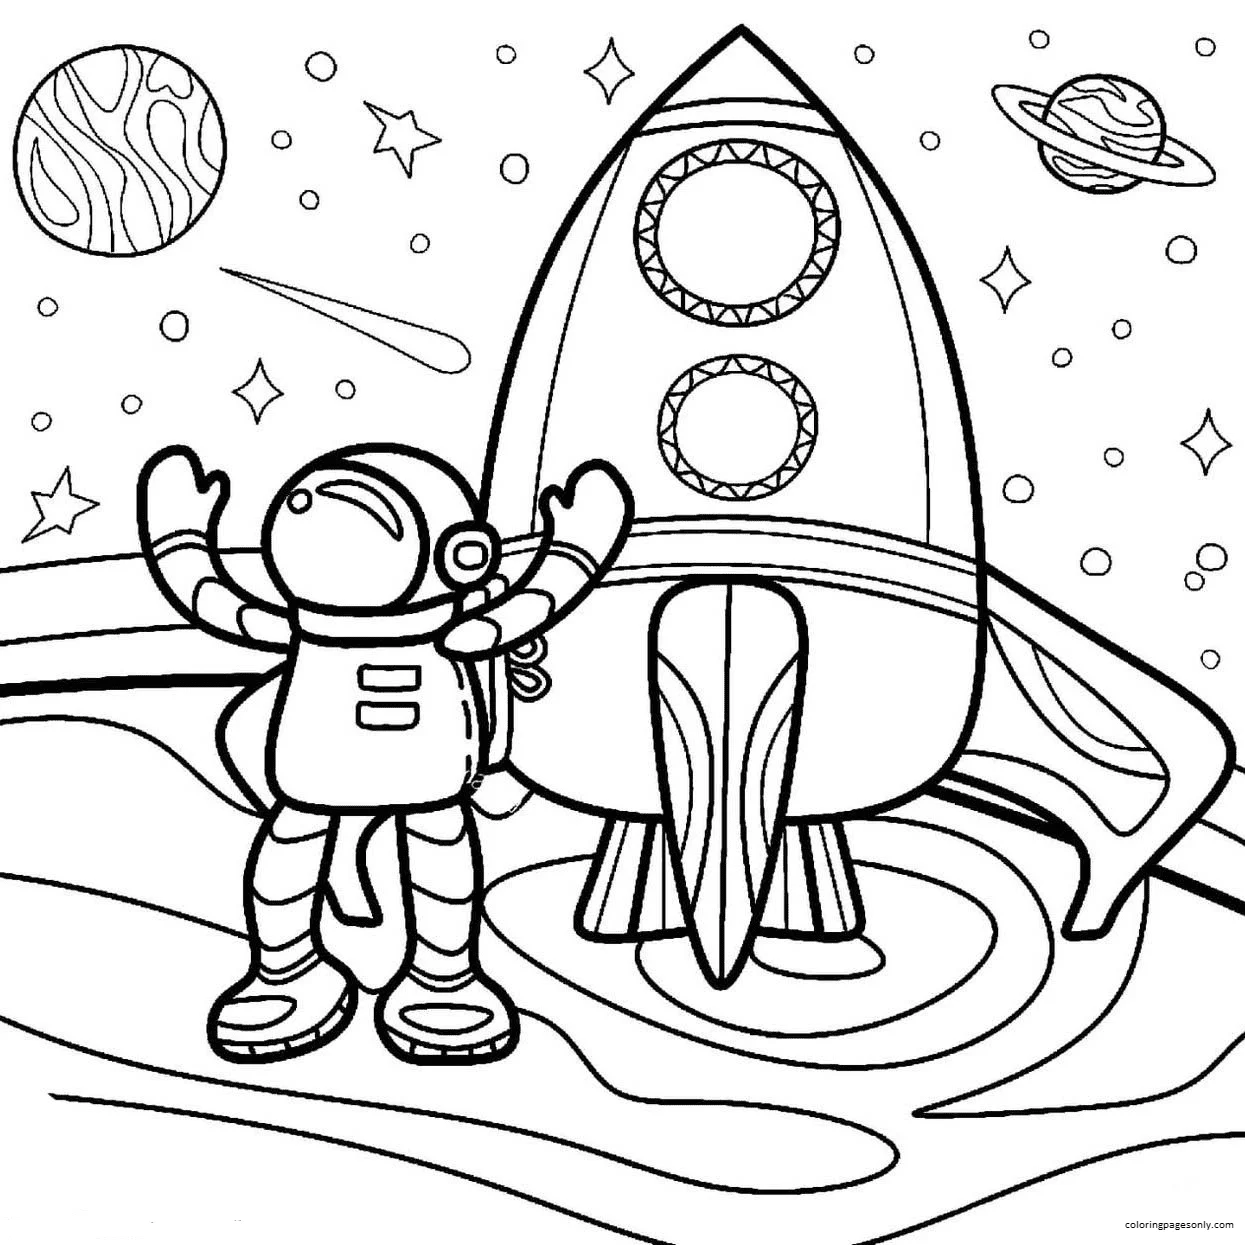 Astronauta de desenho animado com Rocket 1 from Rocket